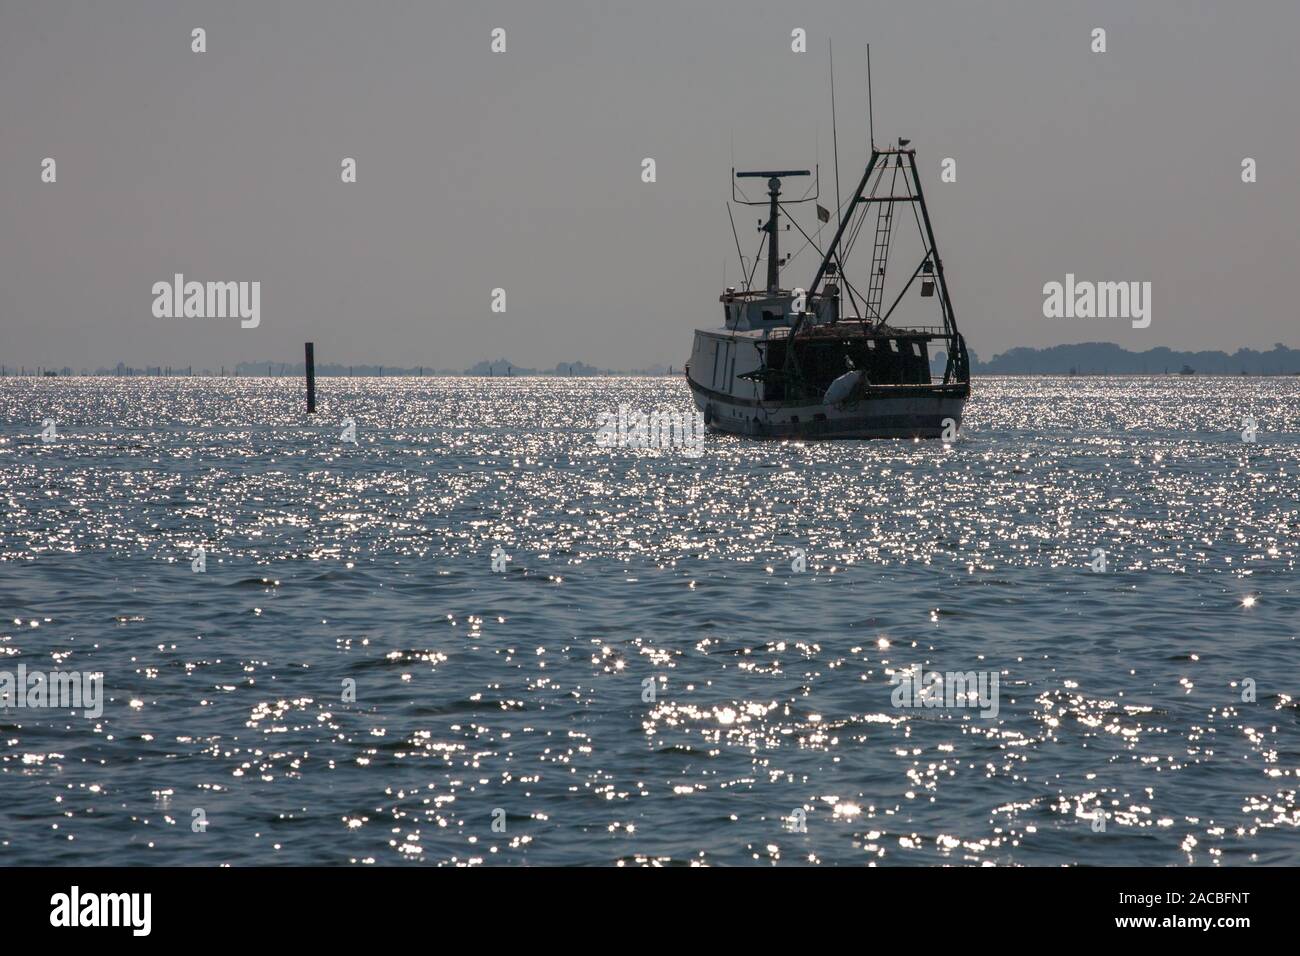 Fishing boat in the Marano Lagunare channel of the Laguna di Marano, Friuli-Venezia Giulia, Italy Stock Photo